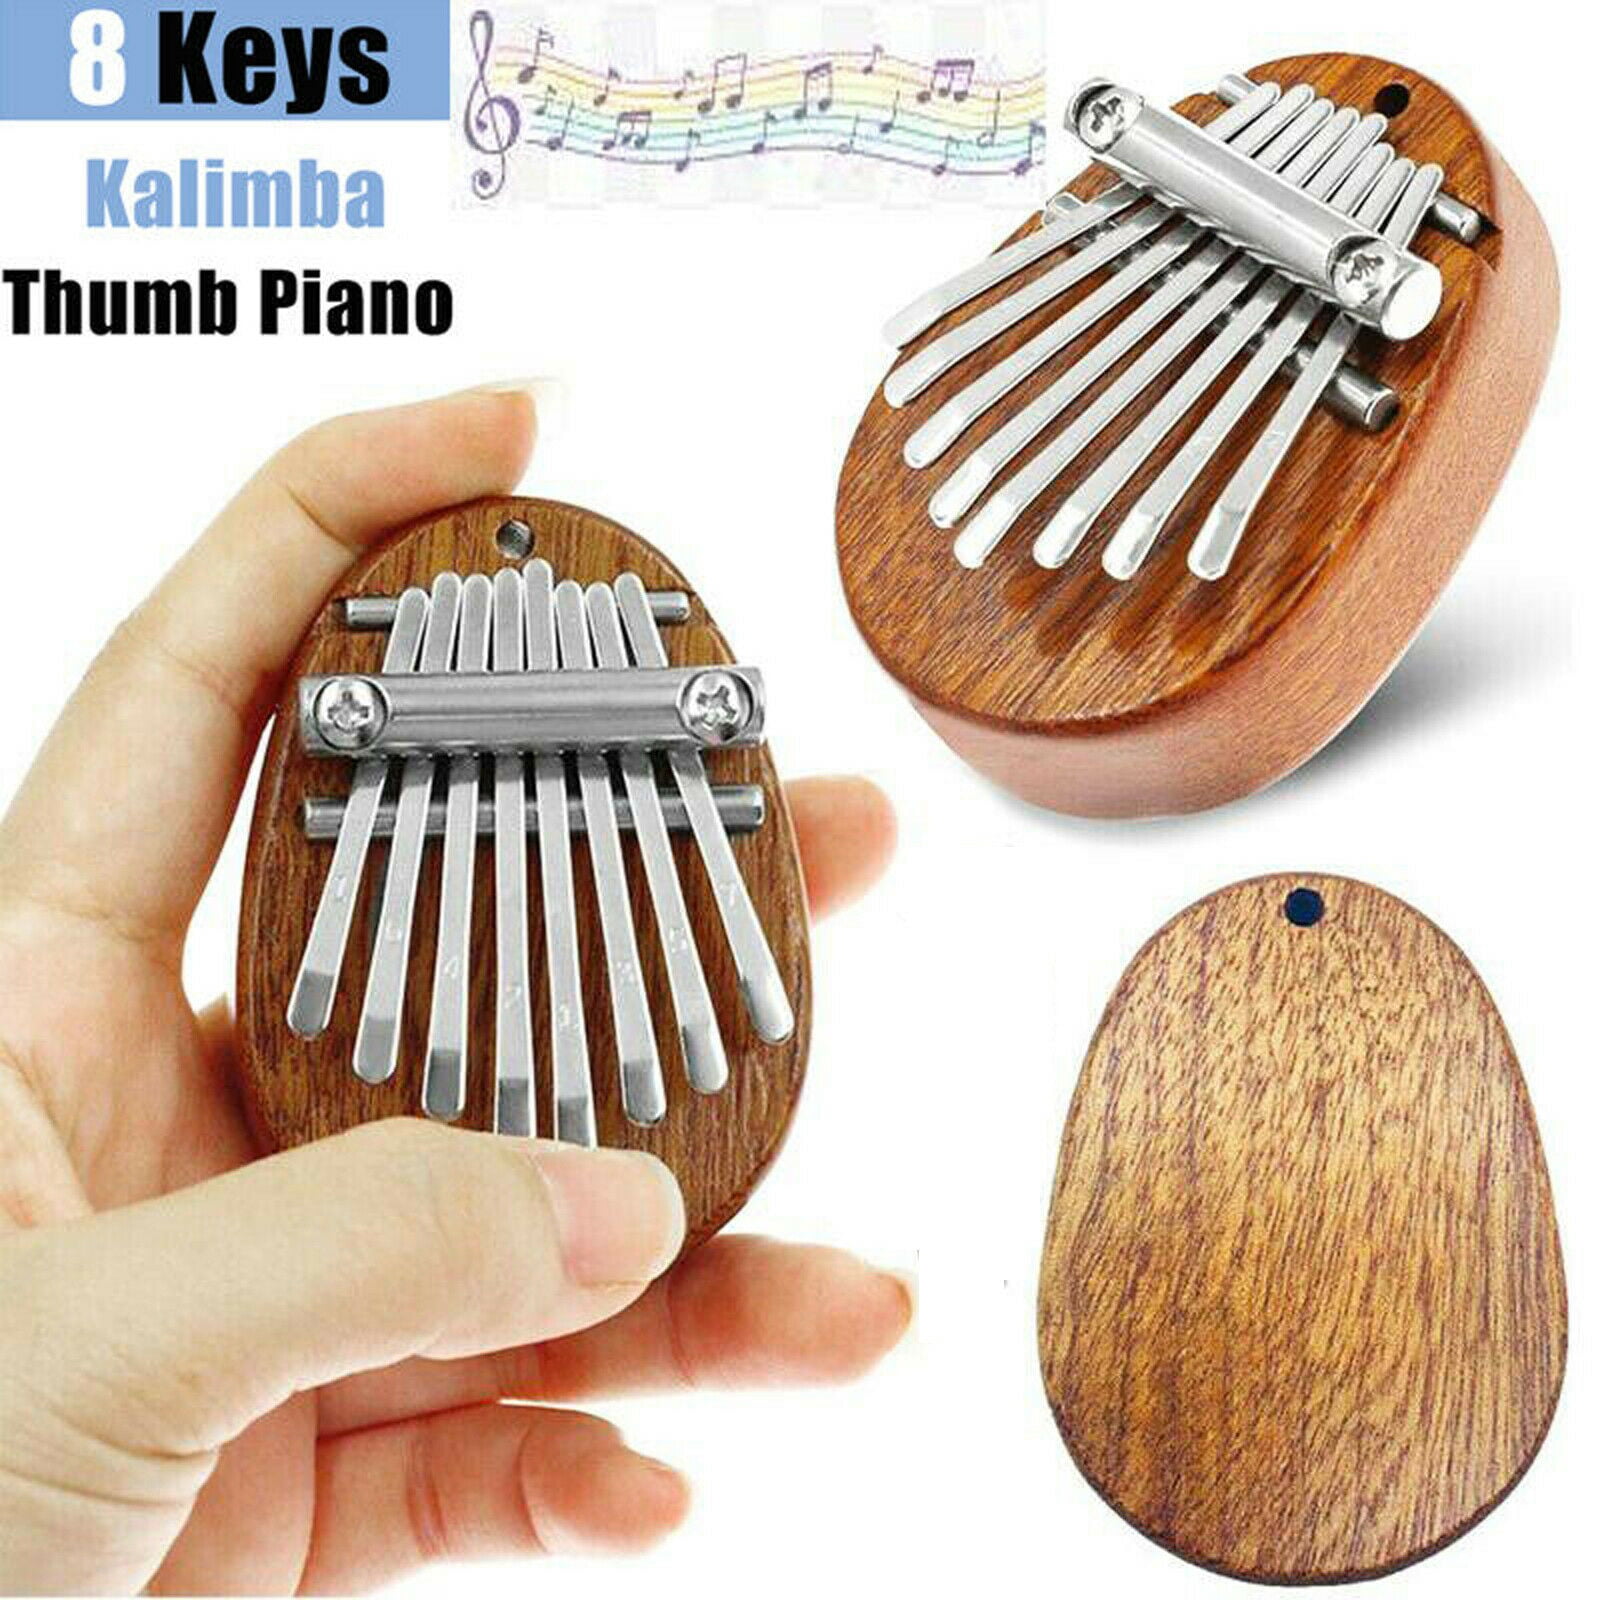 EQWLJWE Mini Kalimba Thumb Piano,8 Key Mini Thumb Piano for Kids